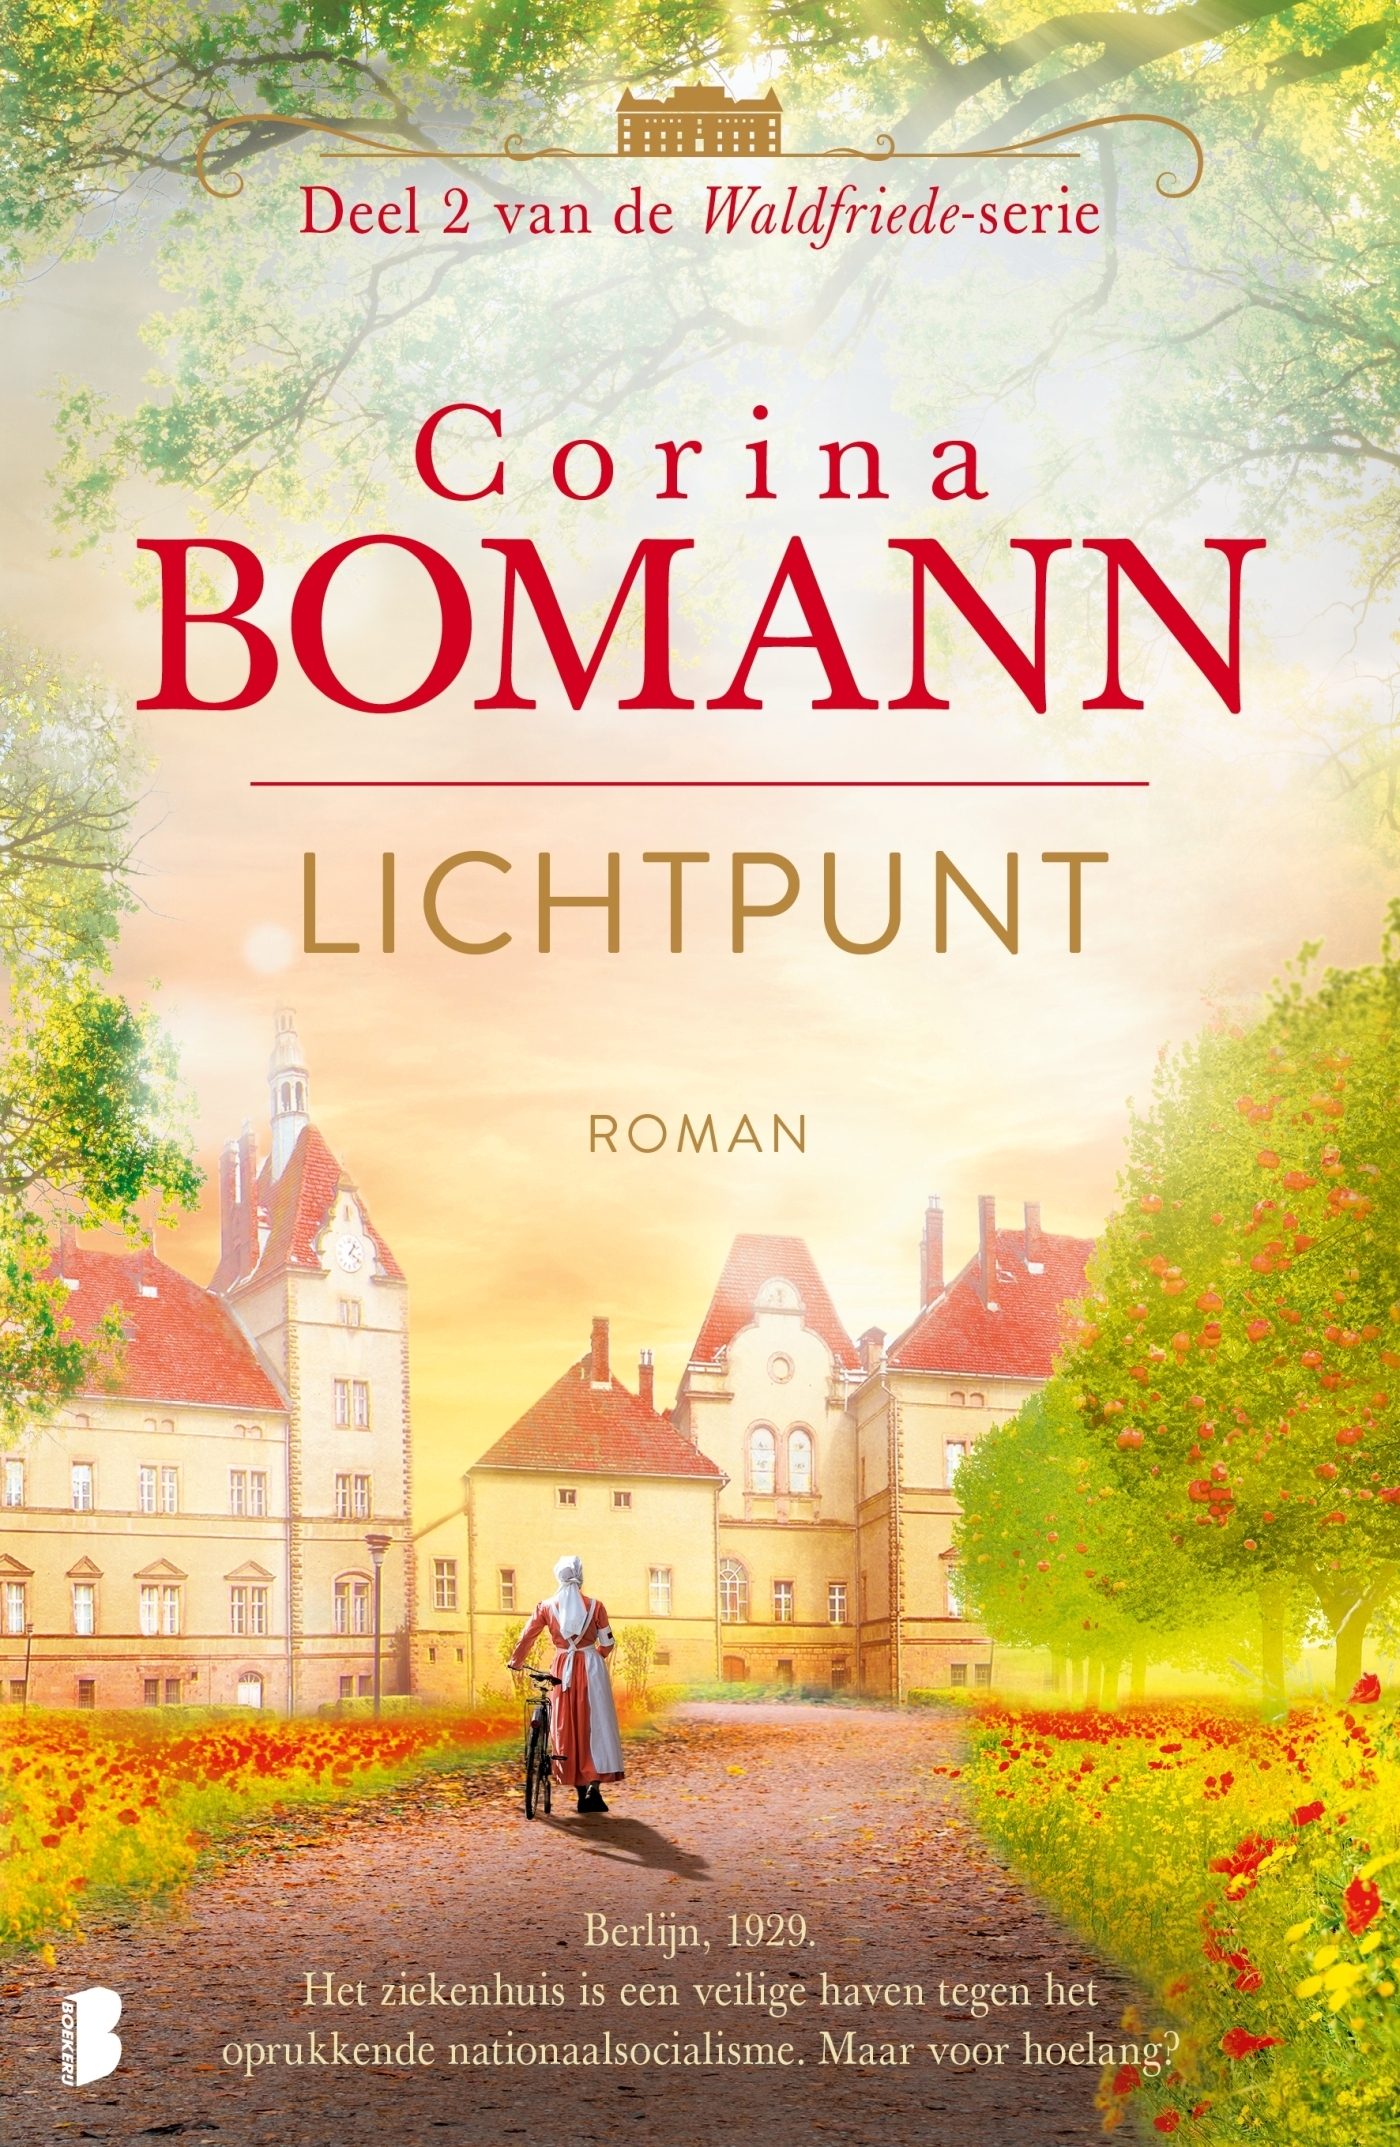 Bomann, Corina-Lichtpunt